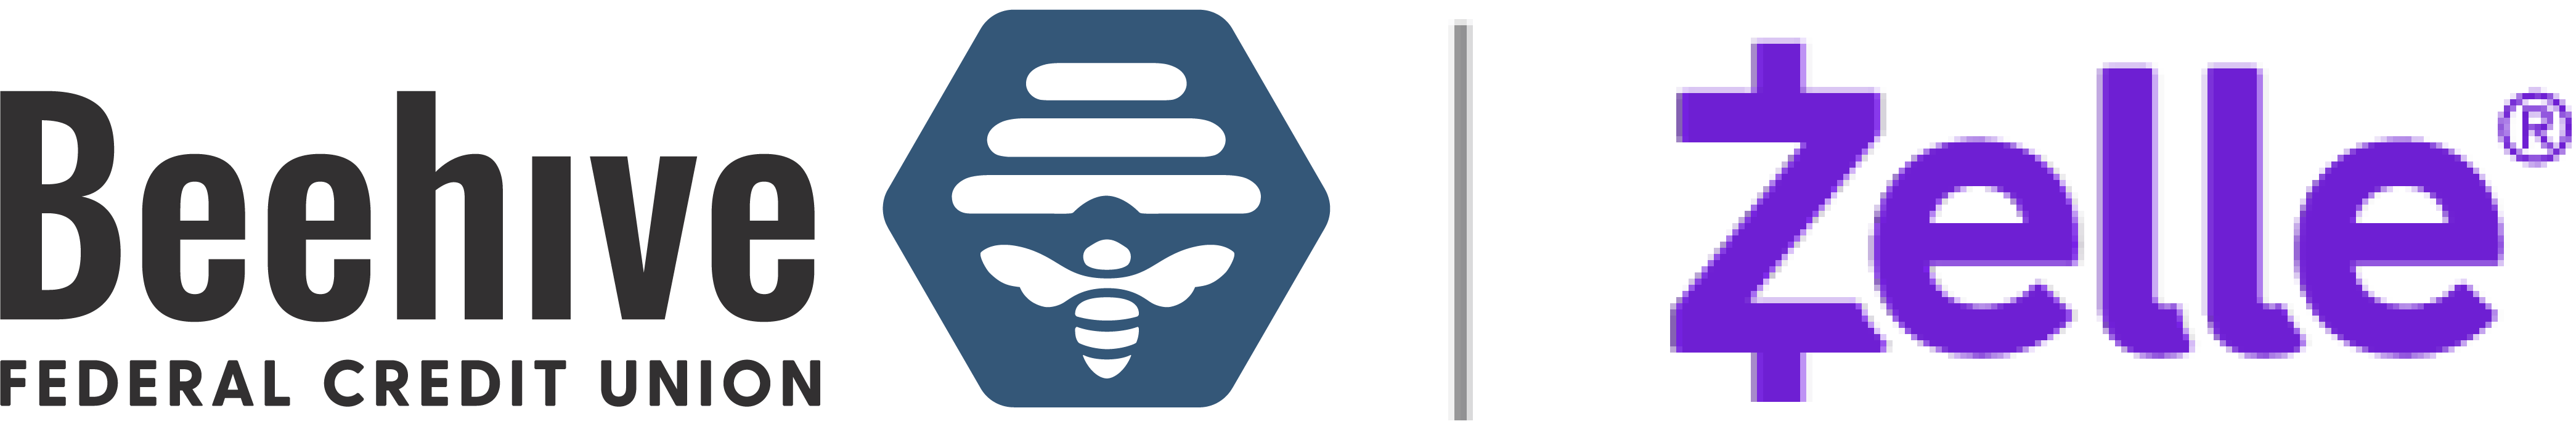 Updated Beehive+Zelle Logo